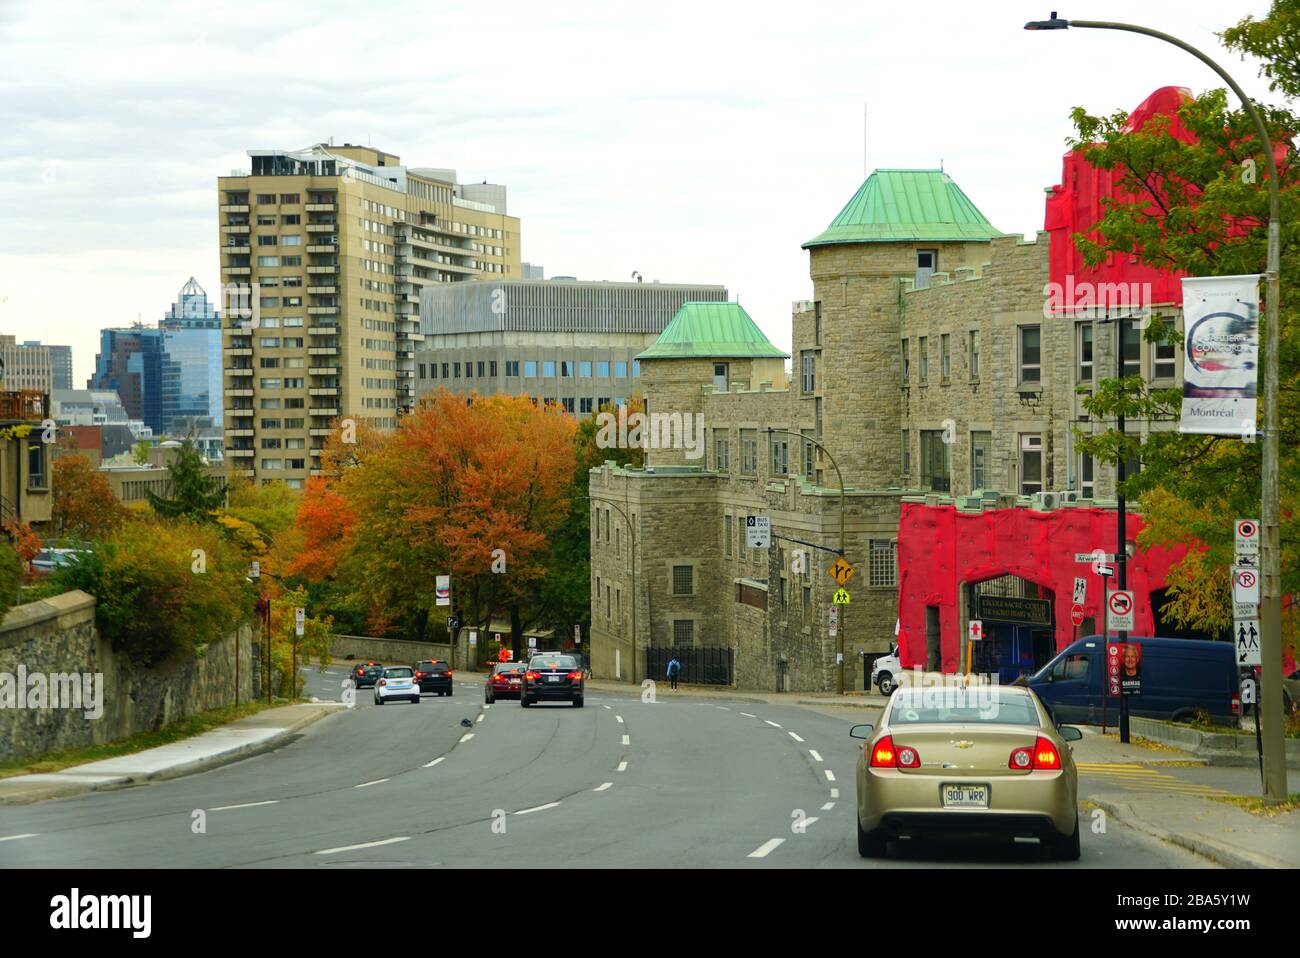 Montréal, Canada - le 27 octobre 2019 - la vue sur le trafic dans la ville qui donne sur les couleurs frappantes du feuillage d'automne Banque D'Images